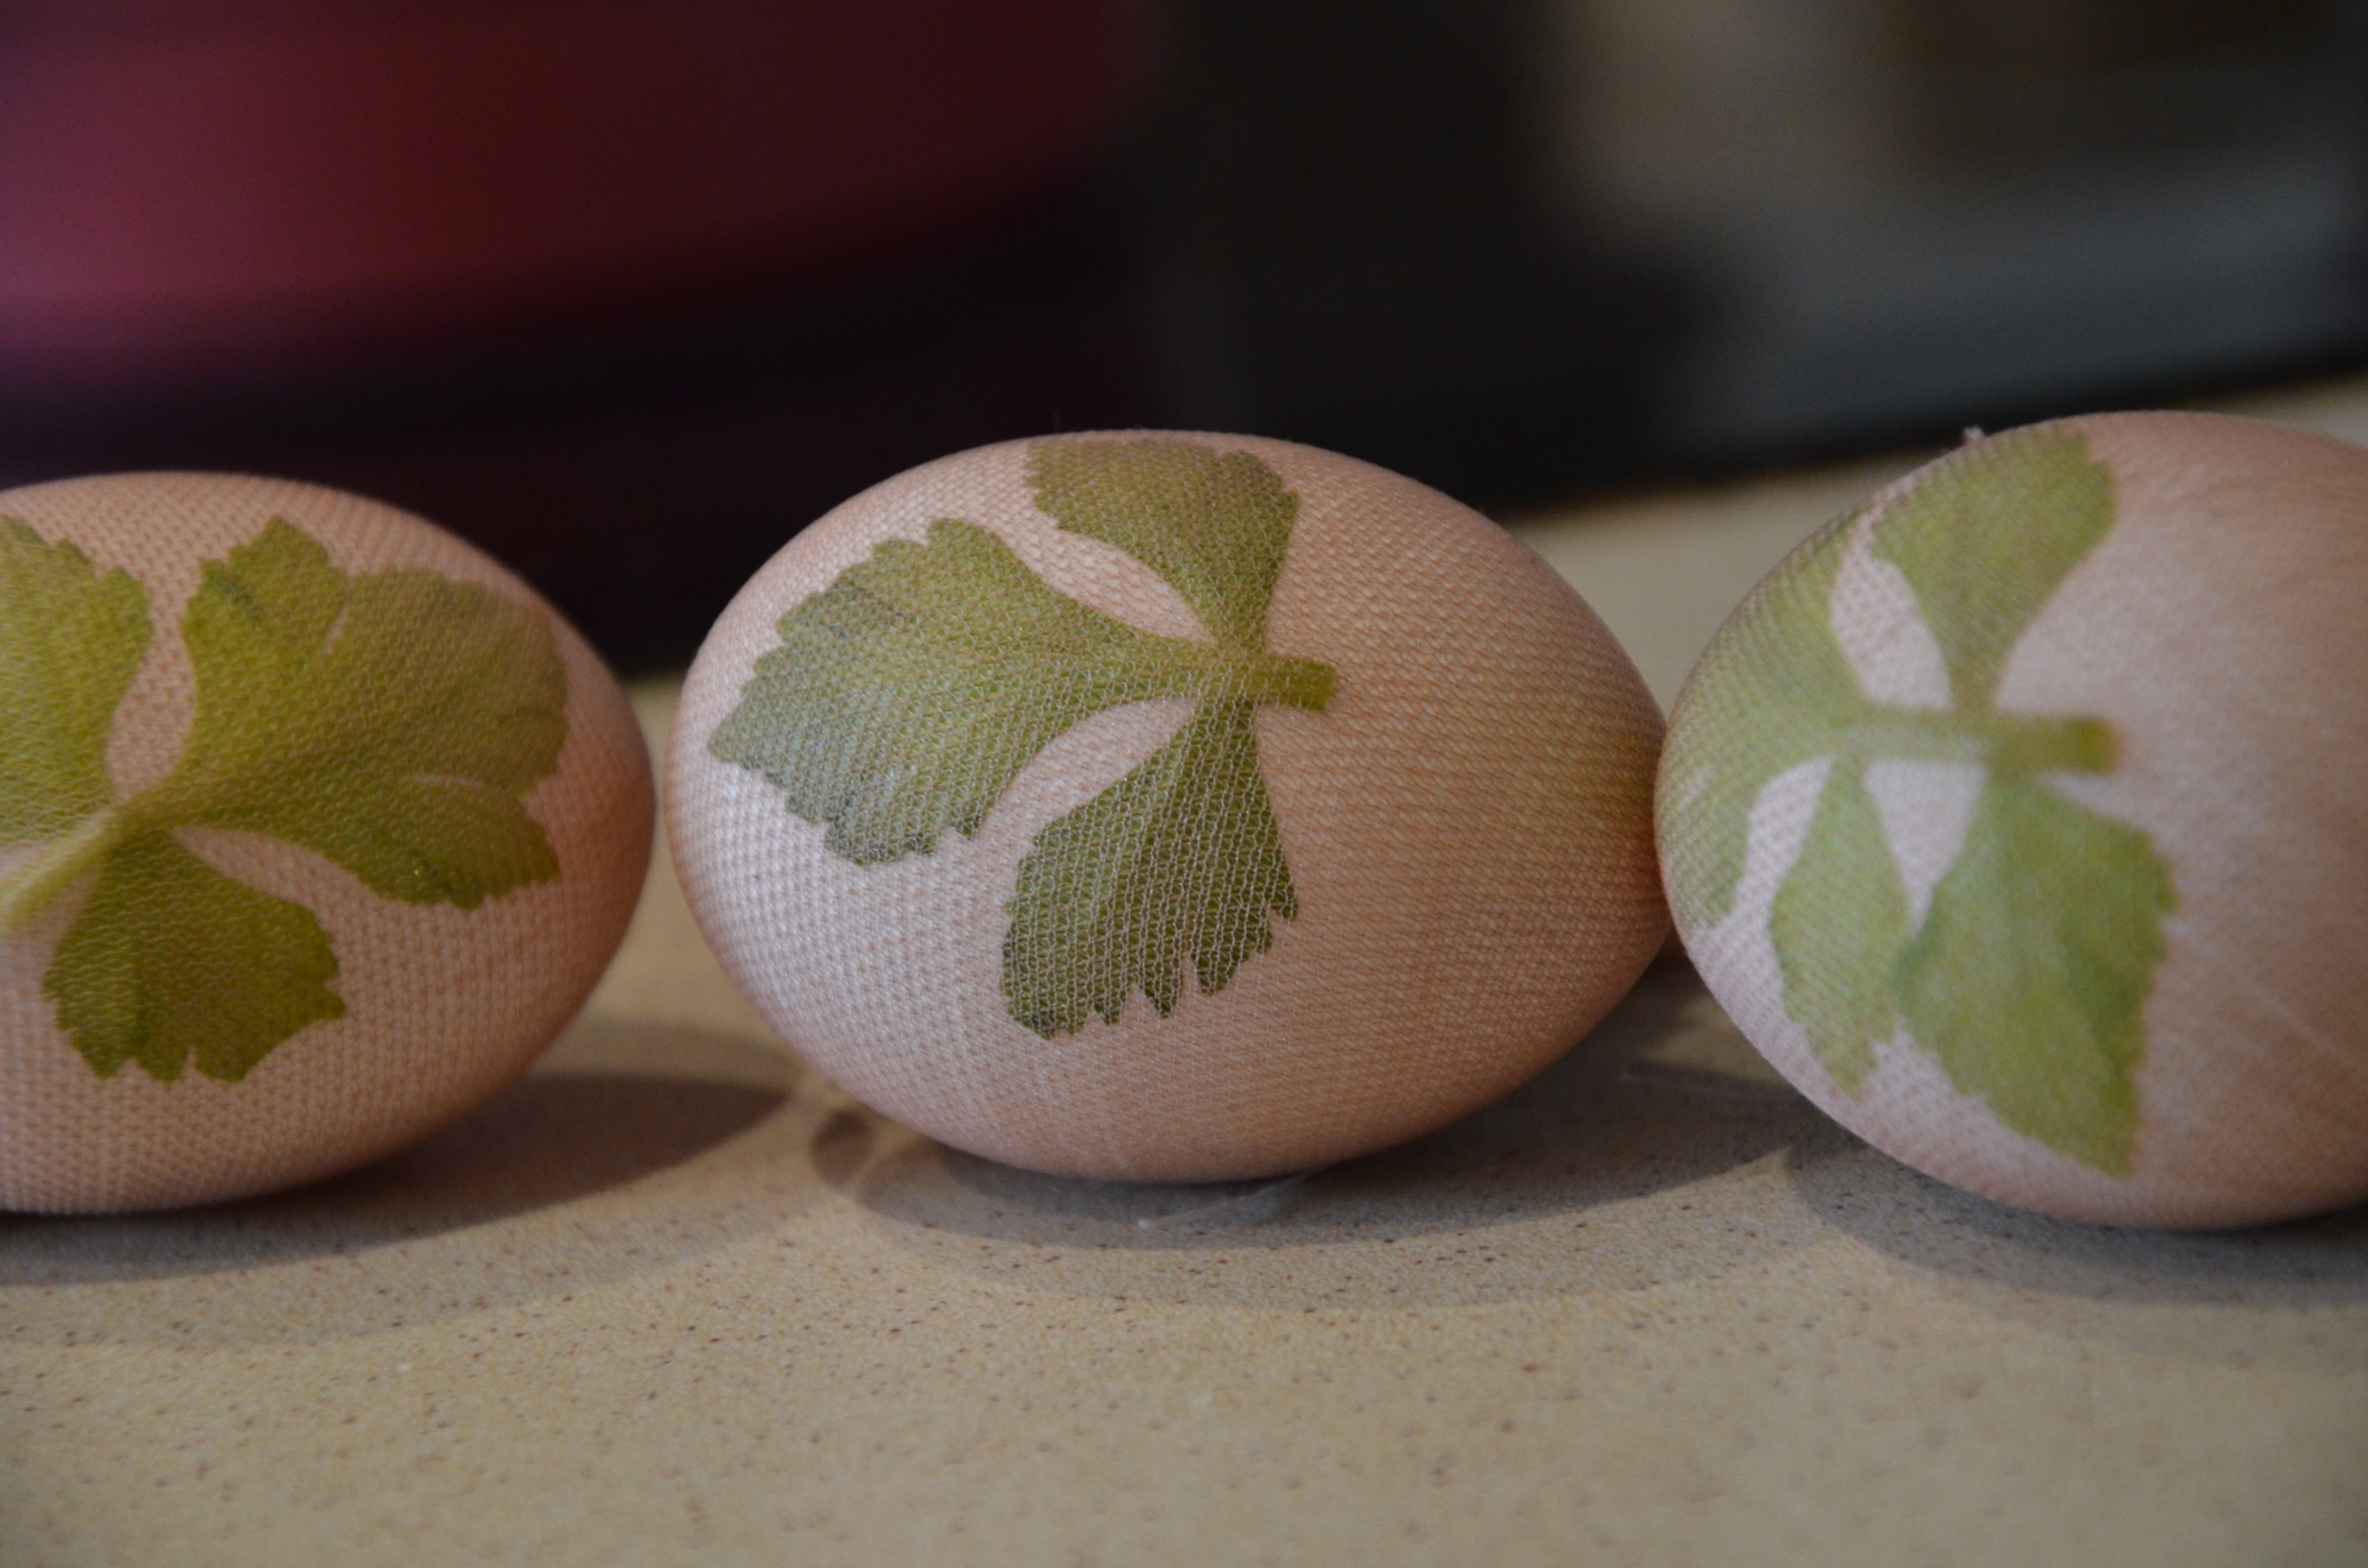 Как покрасить яйца с помощью листьев